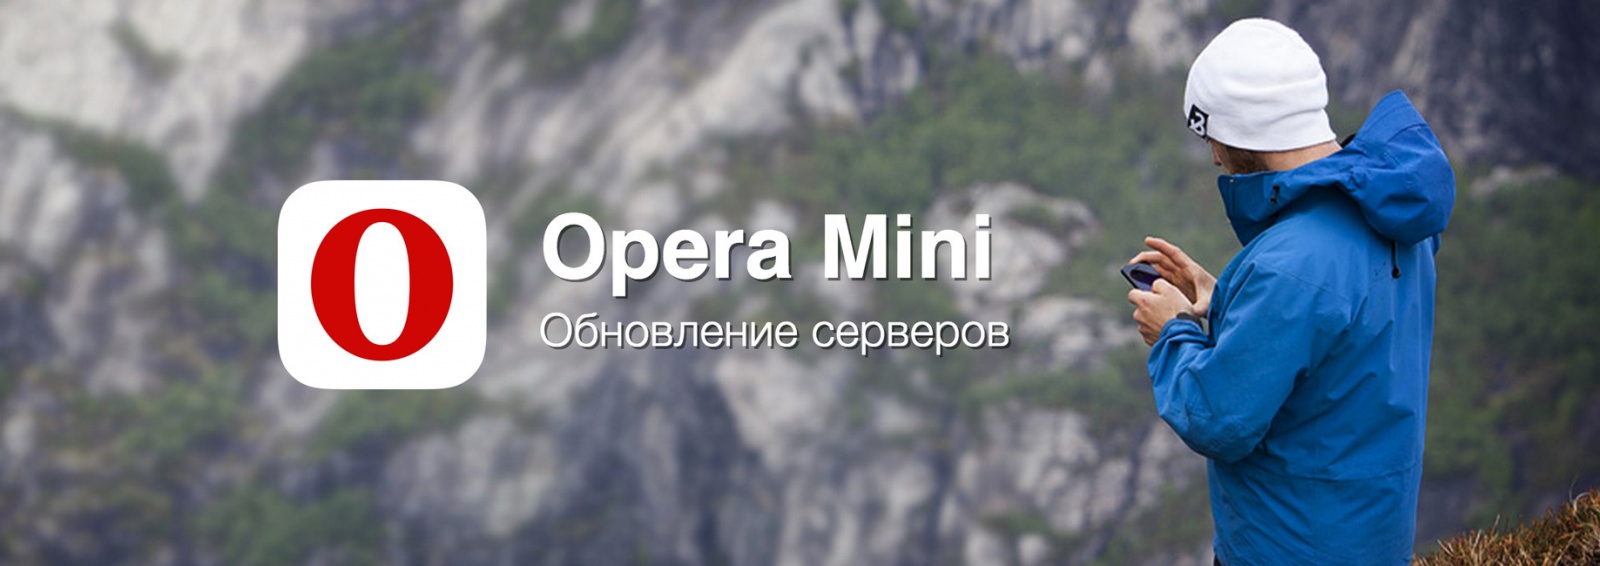 Обновление серверов Opera Mini: Flexbox, ES5, HTML5-парсер - 1